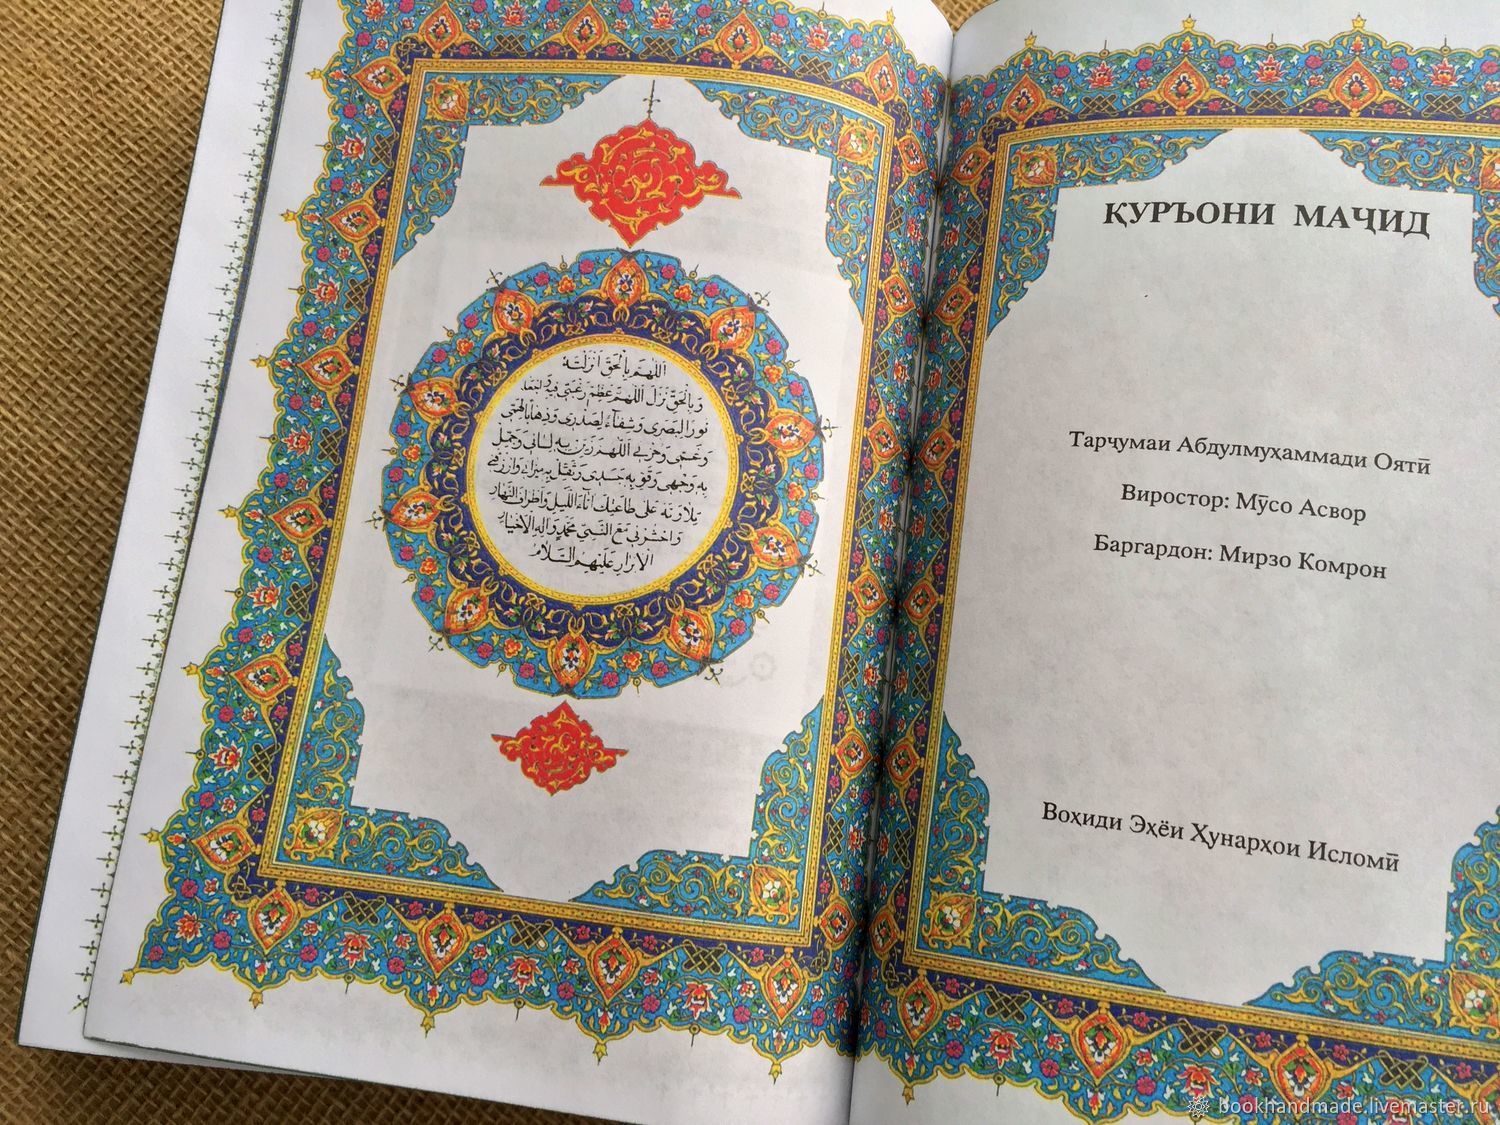 Поздравление с днем рождения на таджикском языке. Коран таджикский. Книга Коран на таджикском языке. Книга куран по таджикски. Коран перевод таджикский.